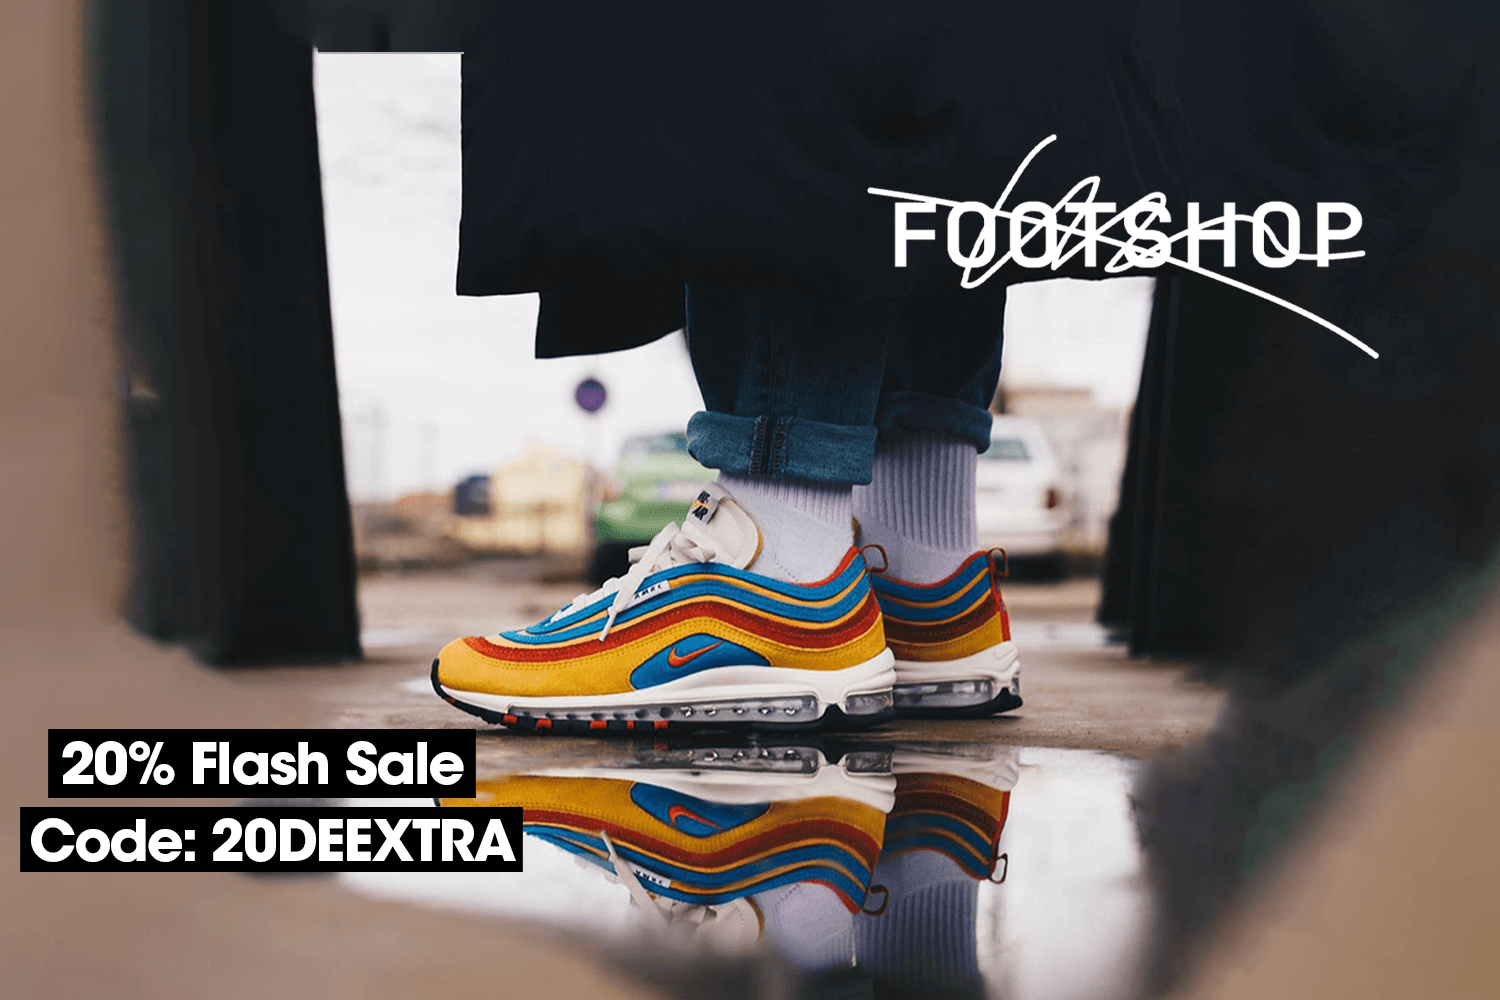 Sichert euch 20% Rabatt beim Footshop Flash Sale